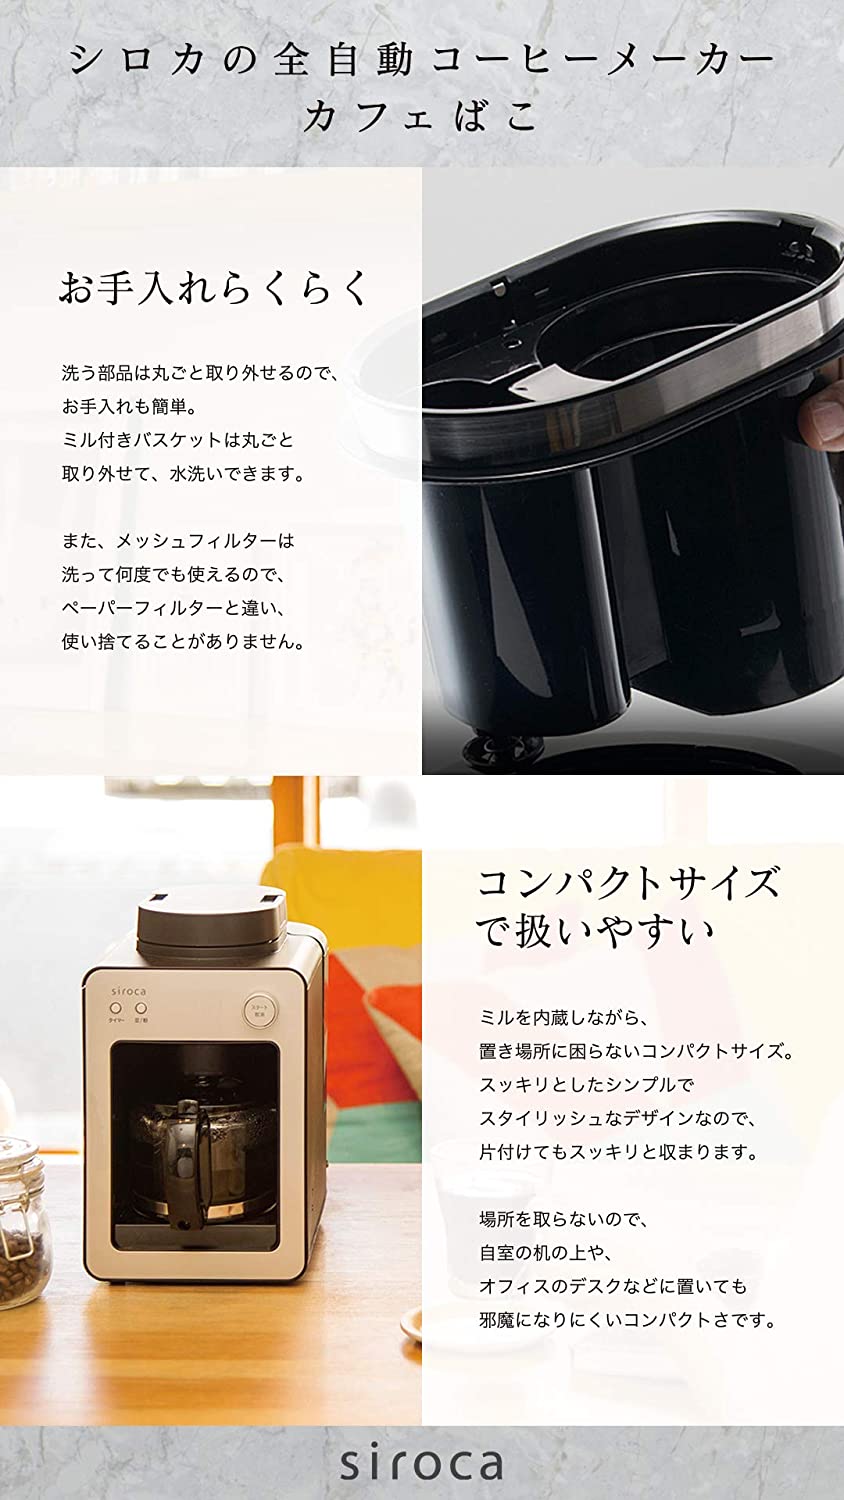 siroca 全自動コーヒーメーカー カフェばこ ステンレスサーバー BK